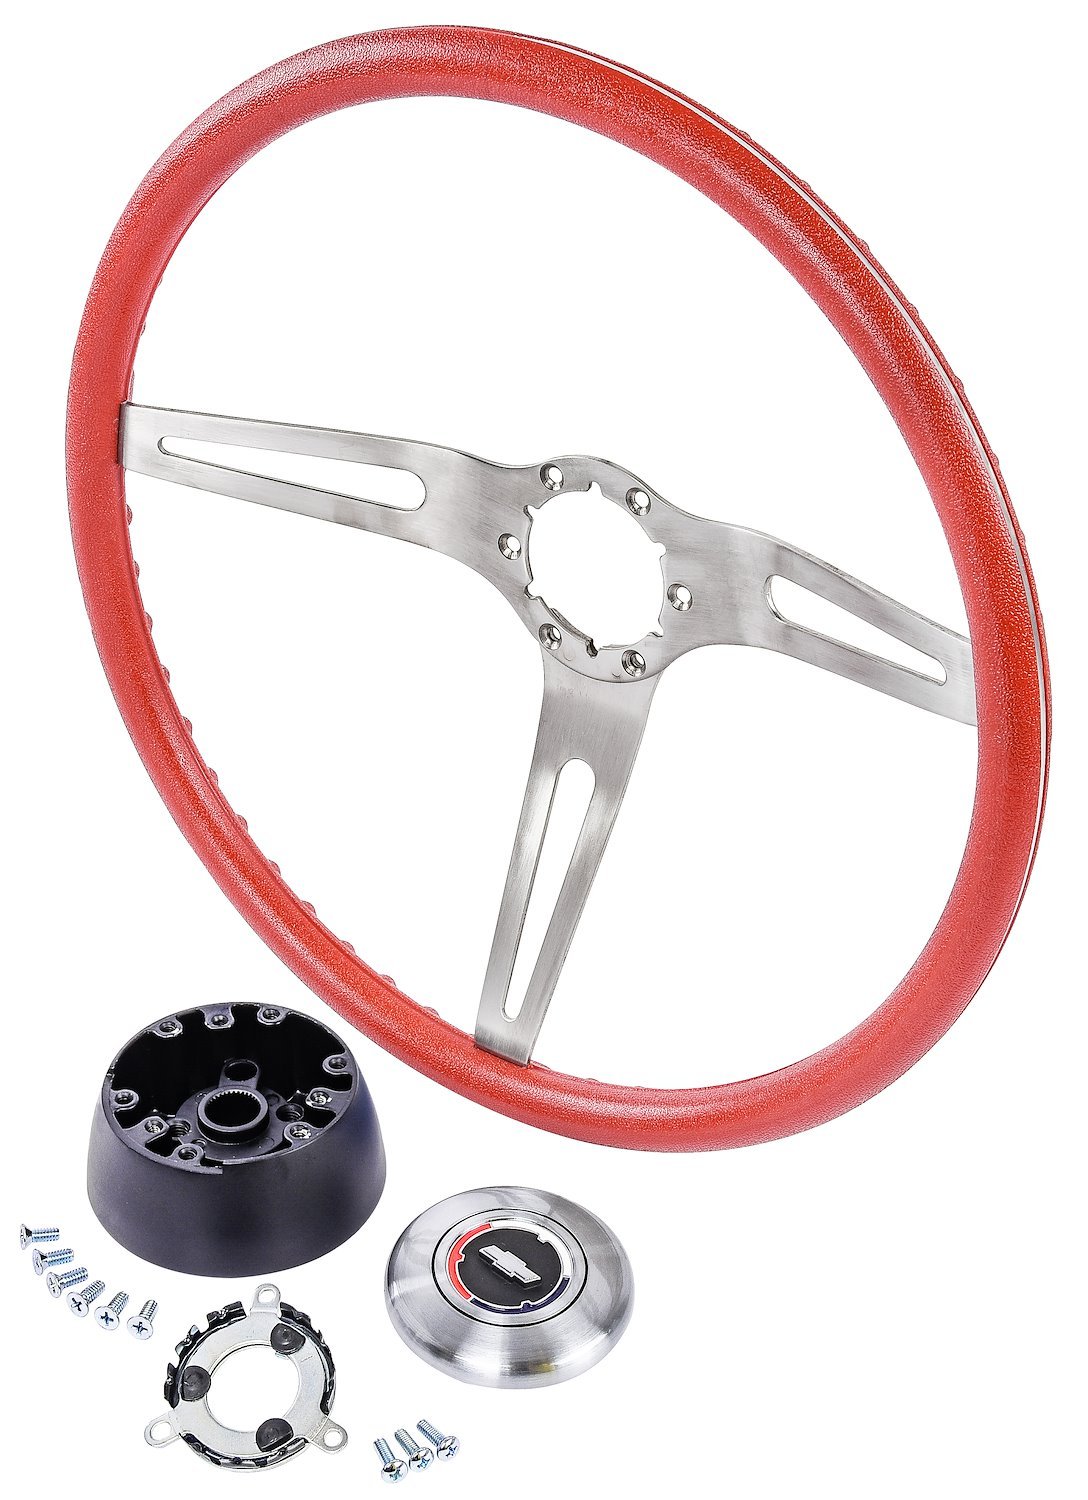 3-Spoke Comfort Grip Steering Wheel Kit Fits Select 1967-1969 Chevrolet Cars & 1960-1975 Chevrolet & GMC Trucks [Red Grip]